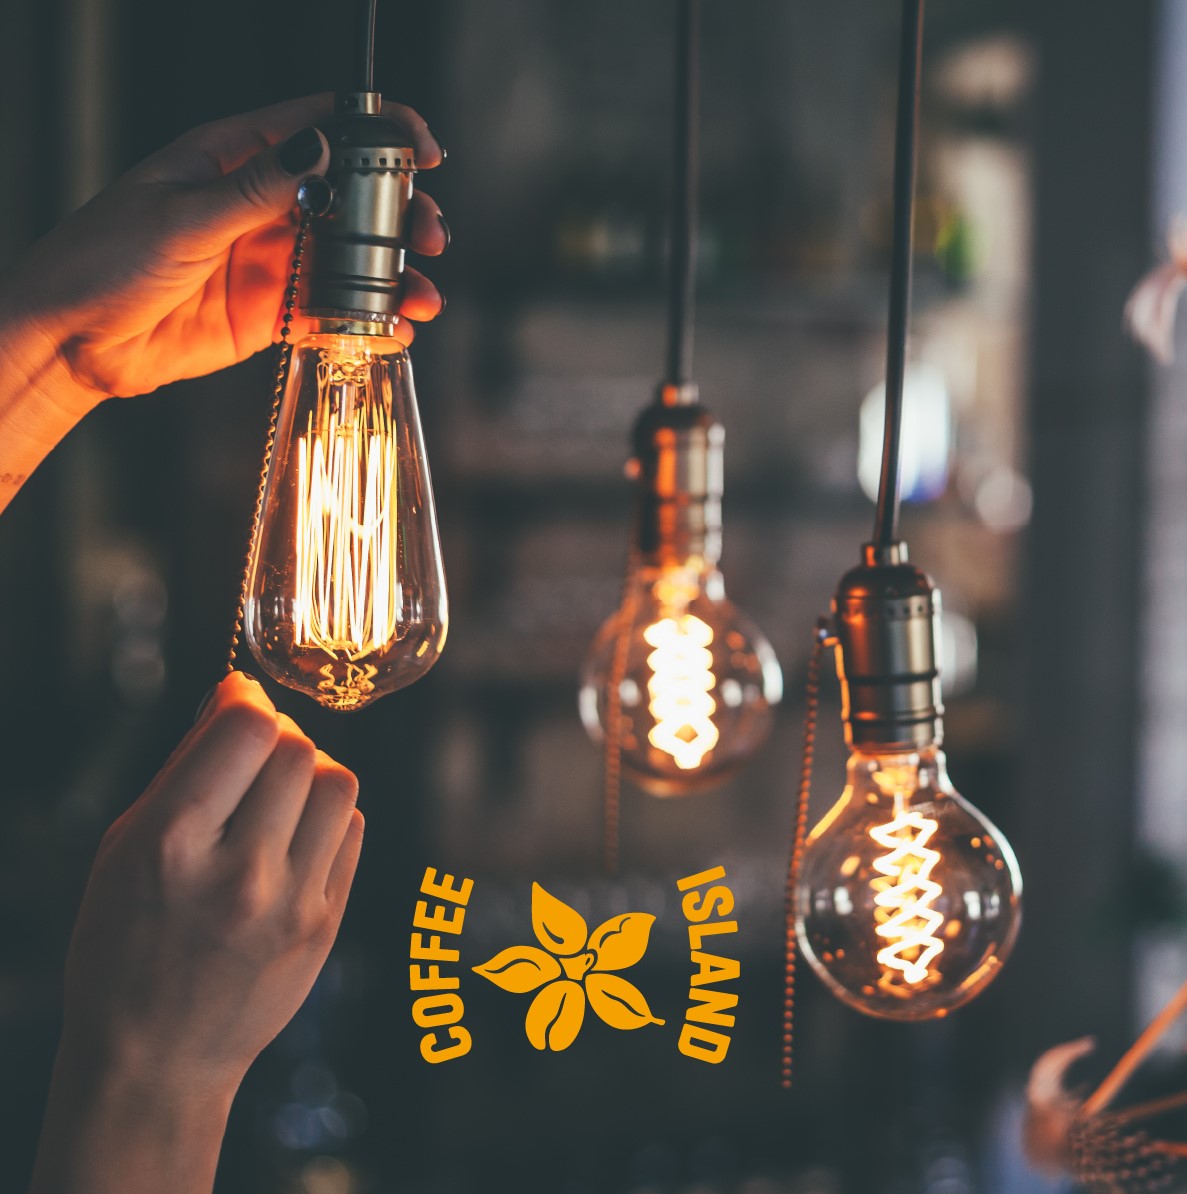 Η Coffee Island ανακοινώνει μέτρα για την αντιμετώπιση της ενεργειακής κρίσης στο δίκτυο καταστημάτων της